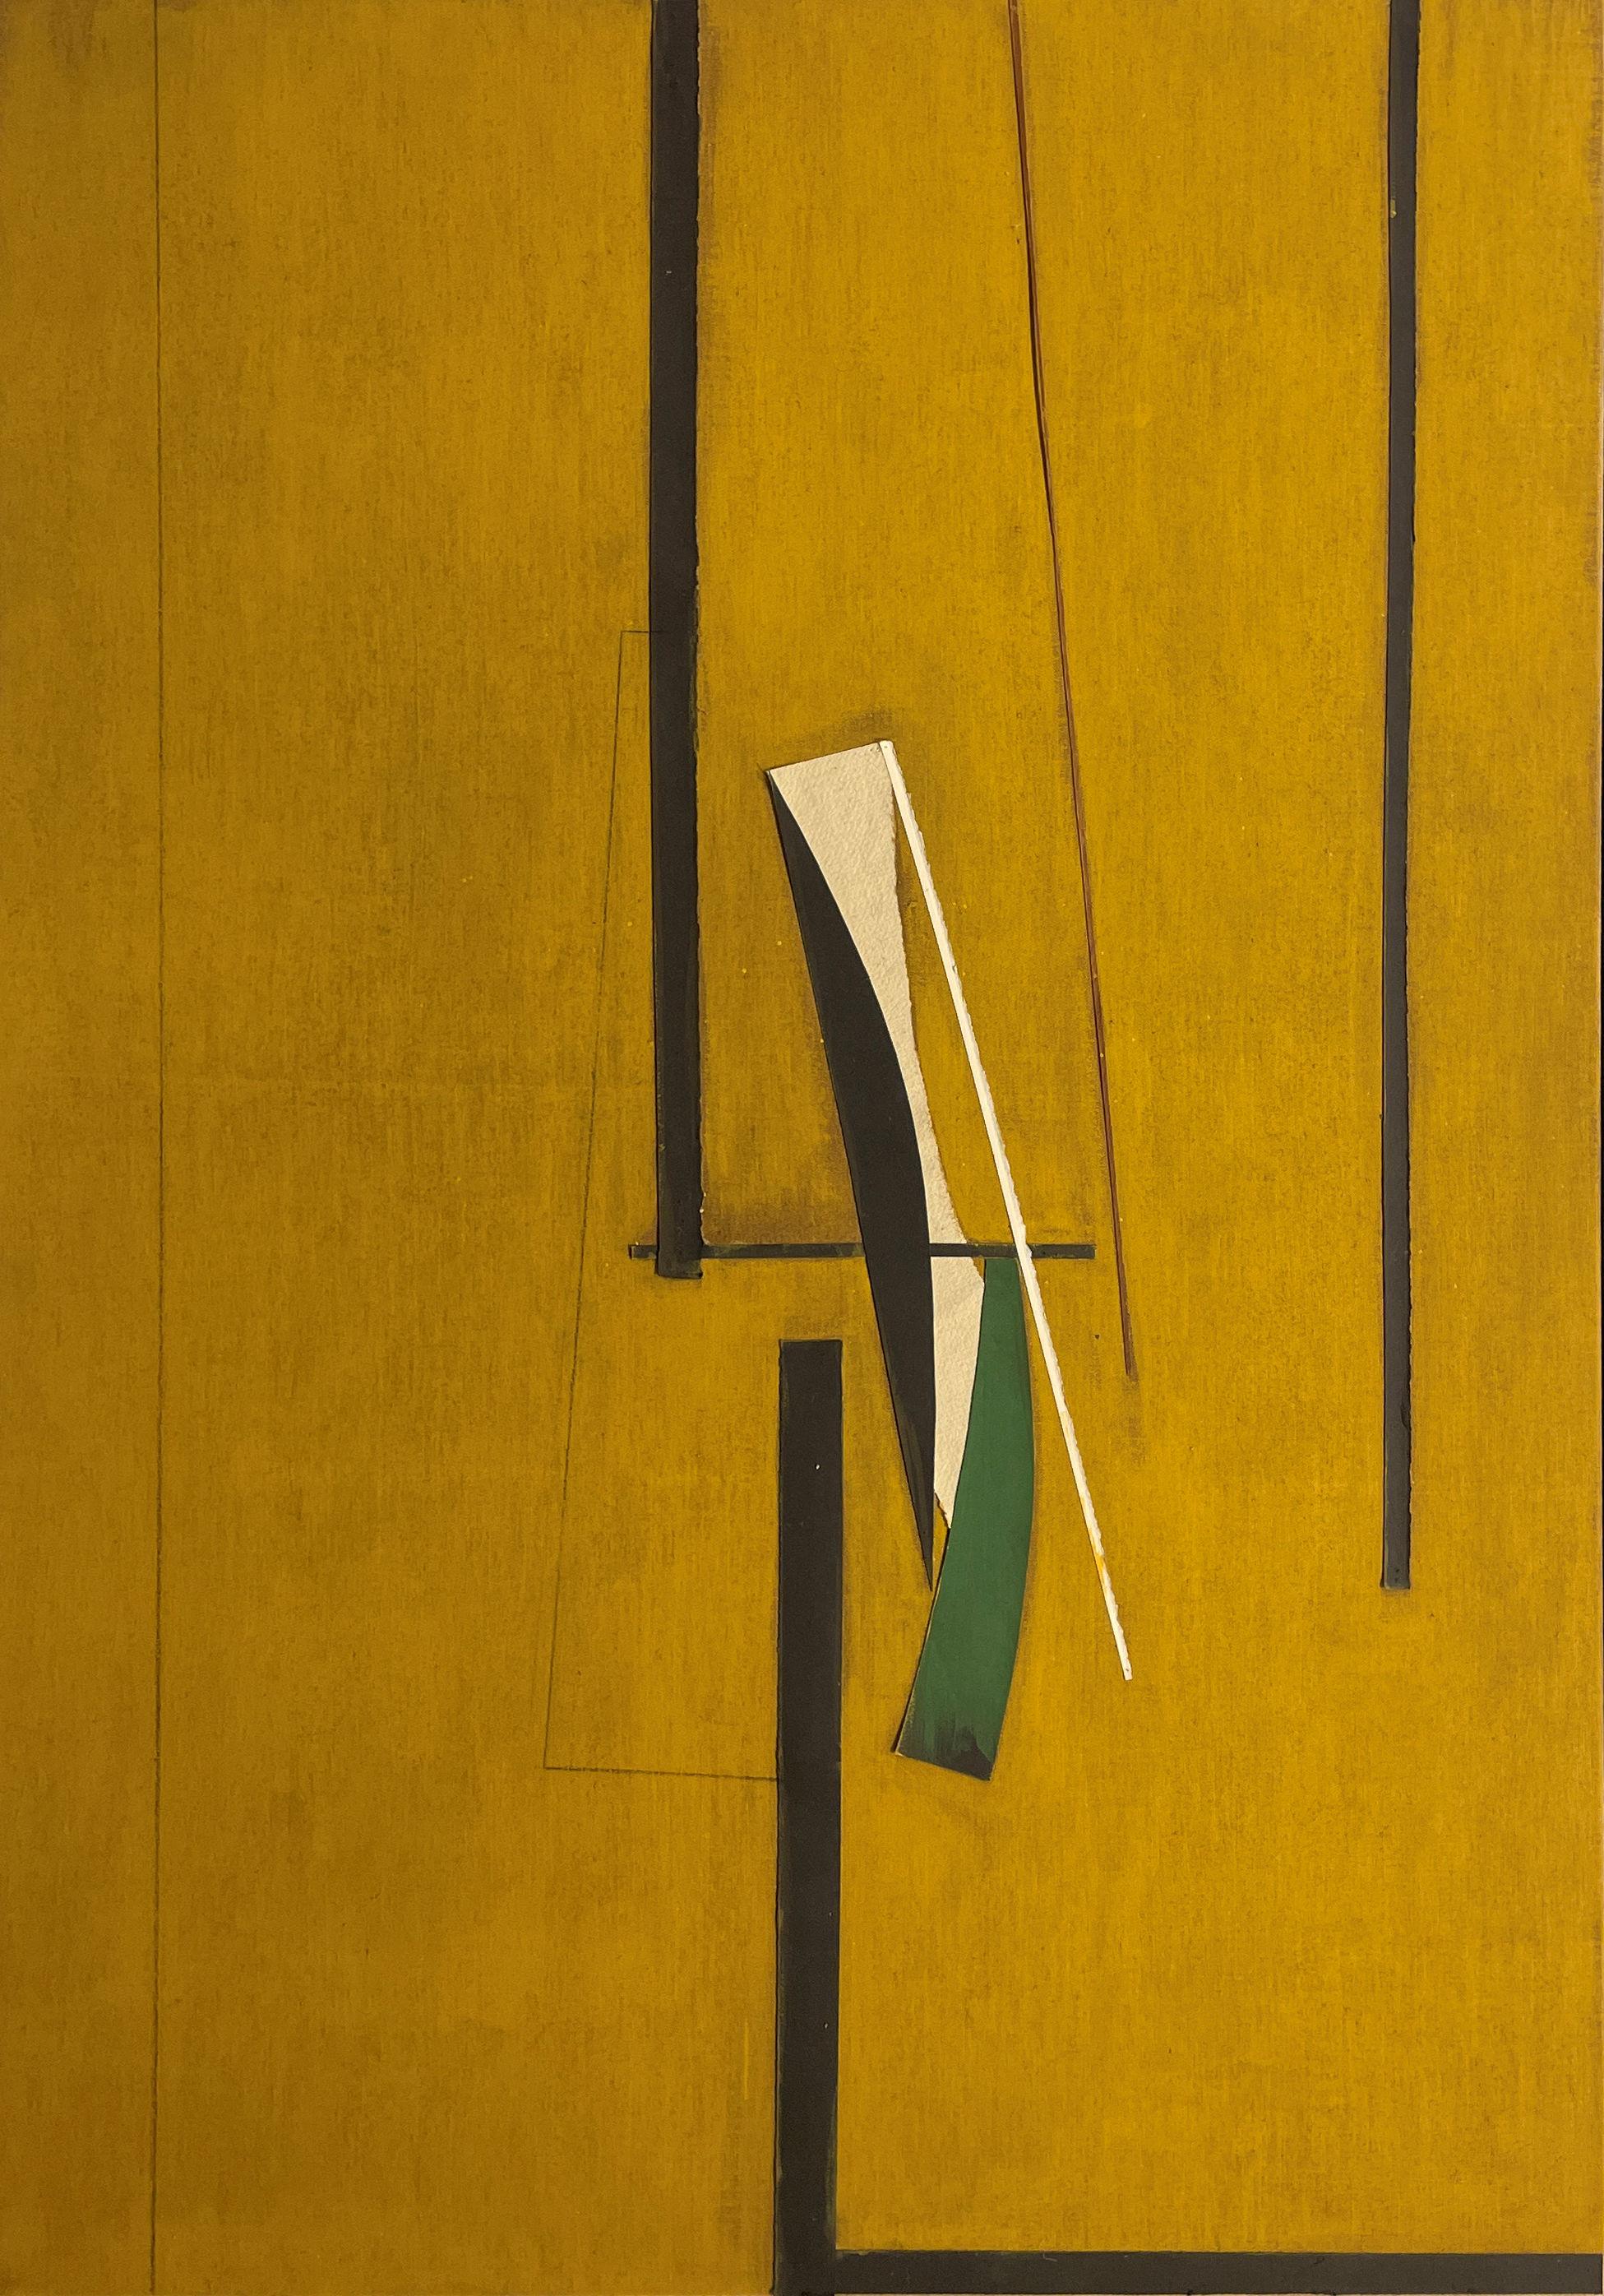 Stephen Edlich
Ouverture, avec des formes de cyprès, 1982
Signé, daté et titré sur le châssis
Peinture acrylique, techniques mixtes et toile de jute sur toile
60 x 40 pouces

Artiste travaillant dans les traditions post-cubiste et constructiviste,